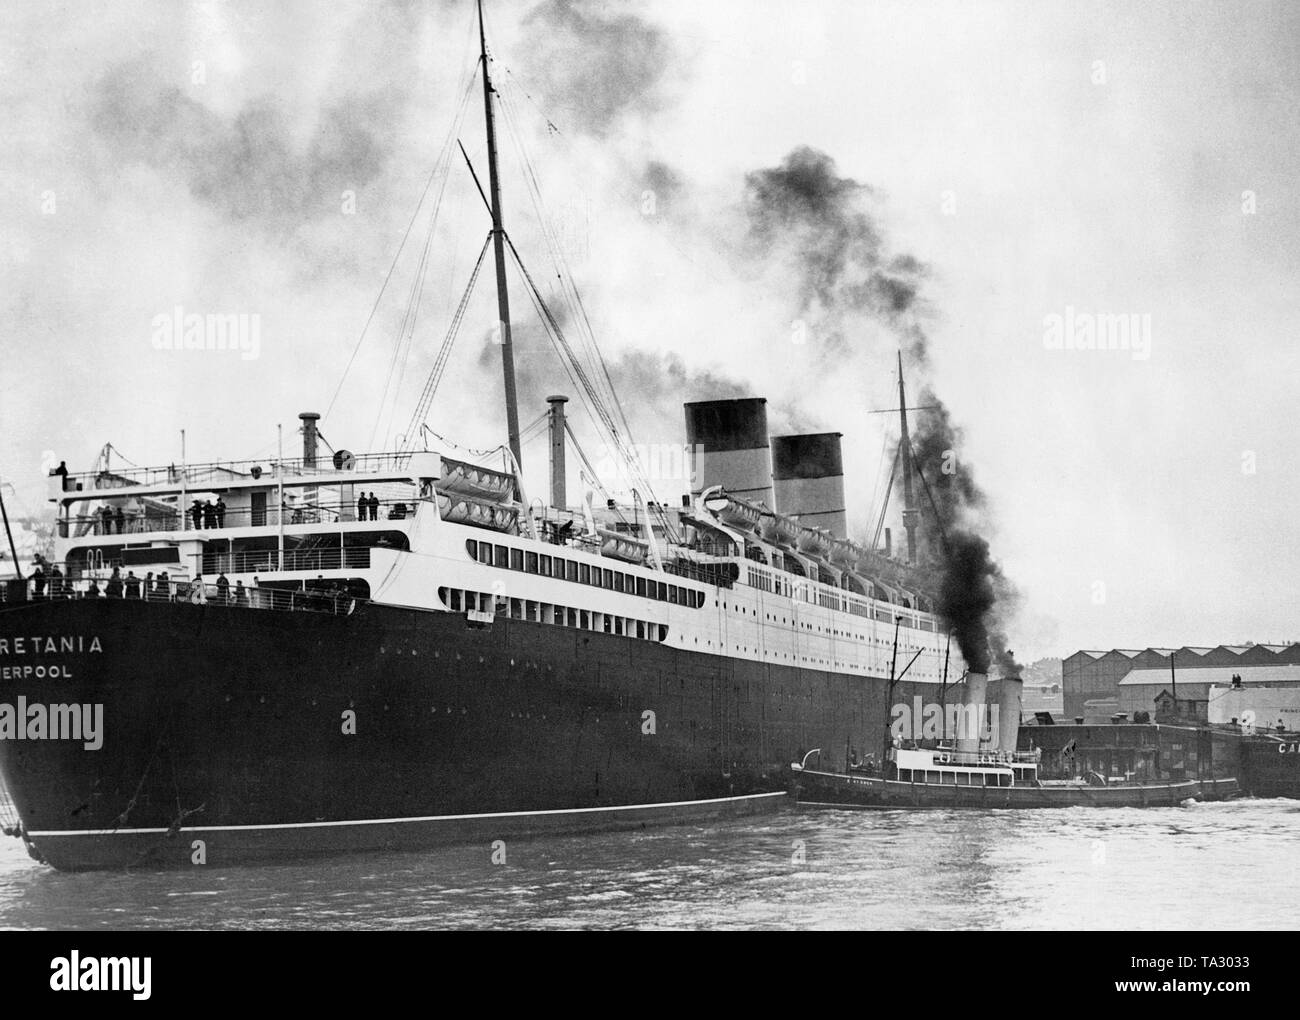 Le auretania «' de la ligne Cunard voyages à partir de l'aménagement du quai, chantier naval Cammell Laird & Company sur la Mersey à Liverpool, où son gouvernail sera installé. Banque D'Images